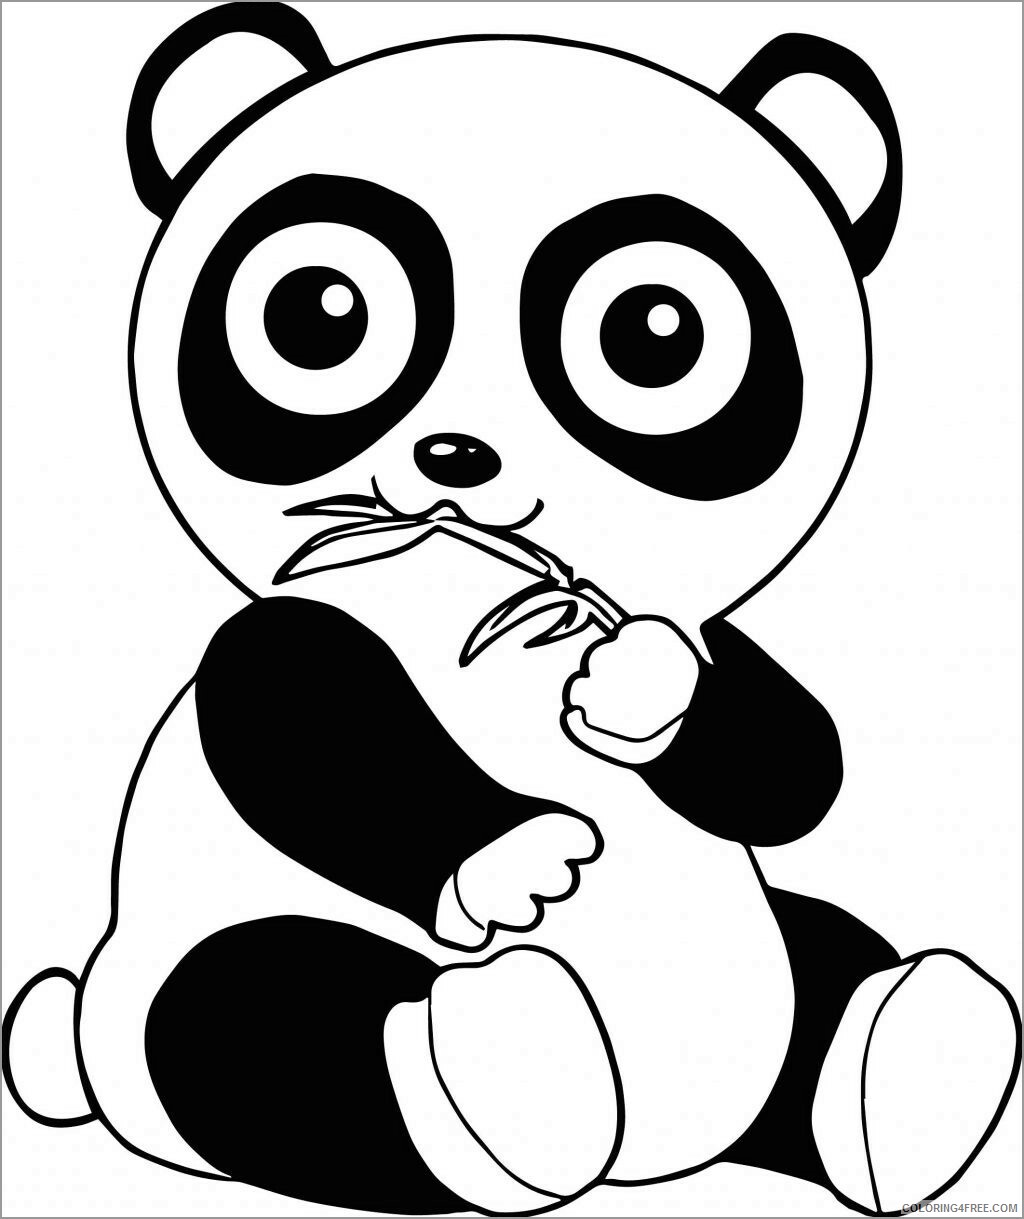 Panda Coloring Pages Animal Printable Sheets cute panda 2021 3675 Coloring4free